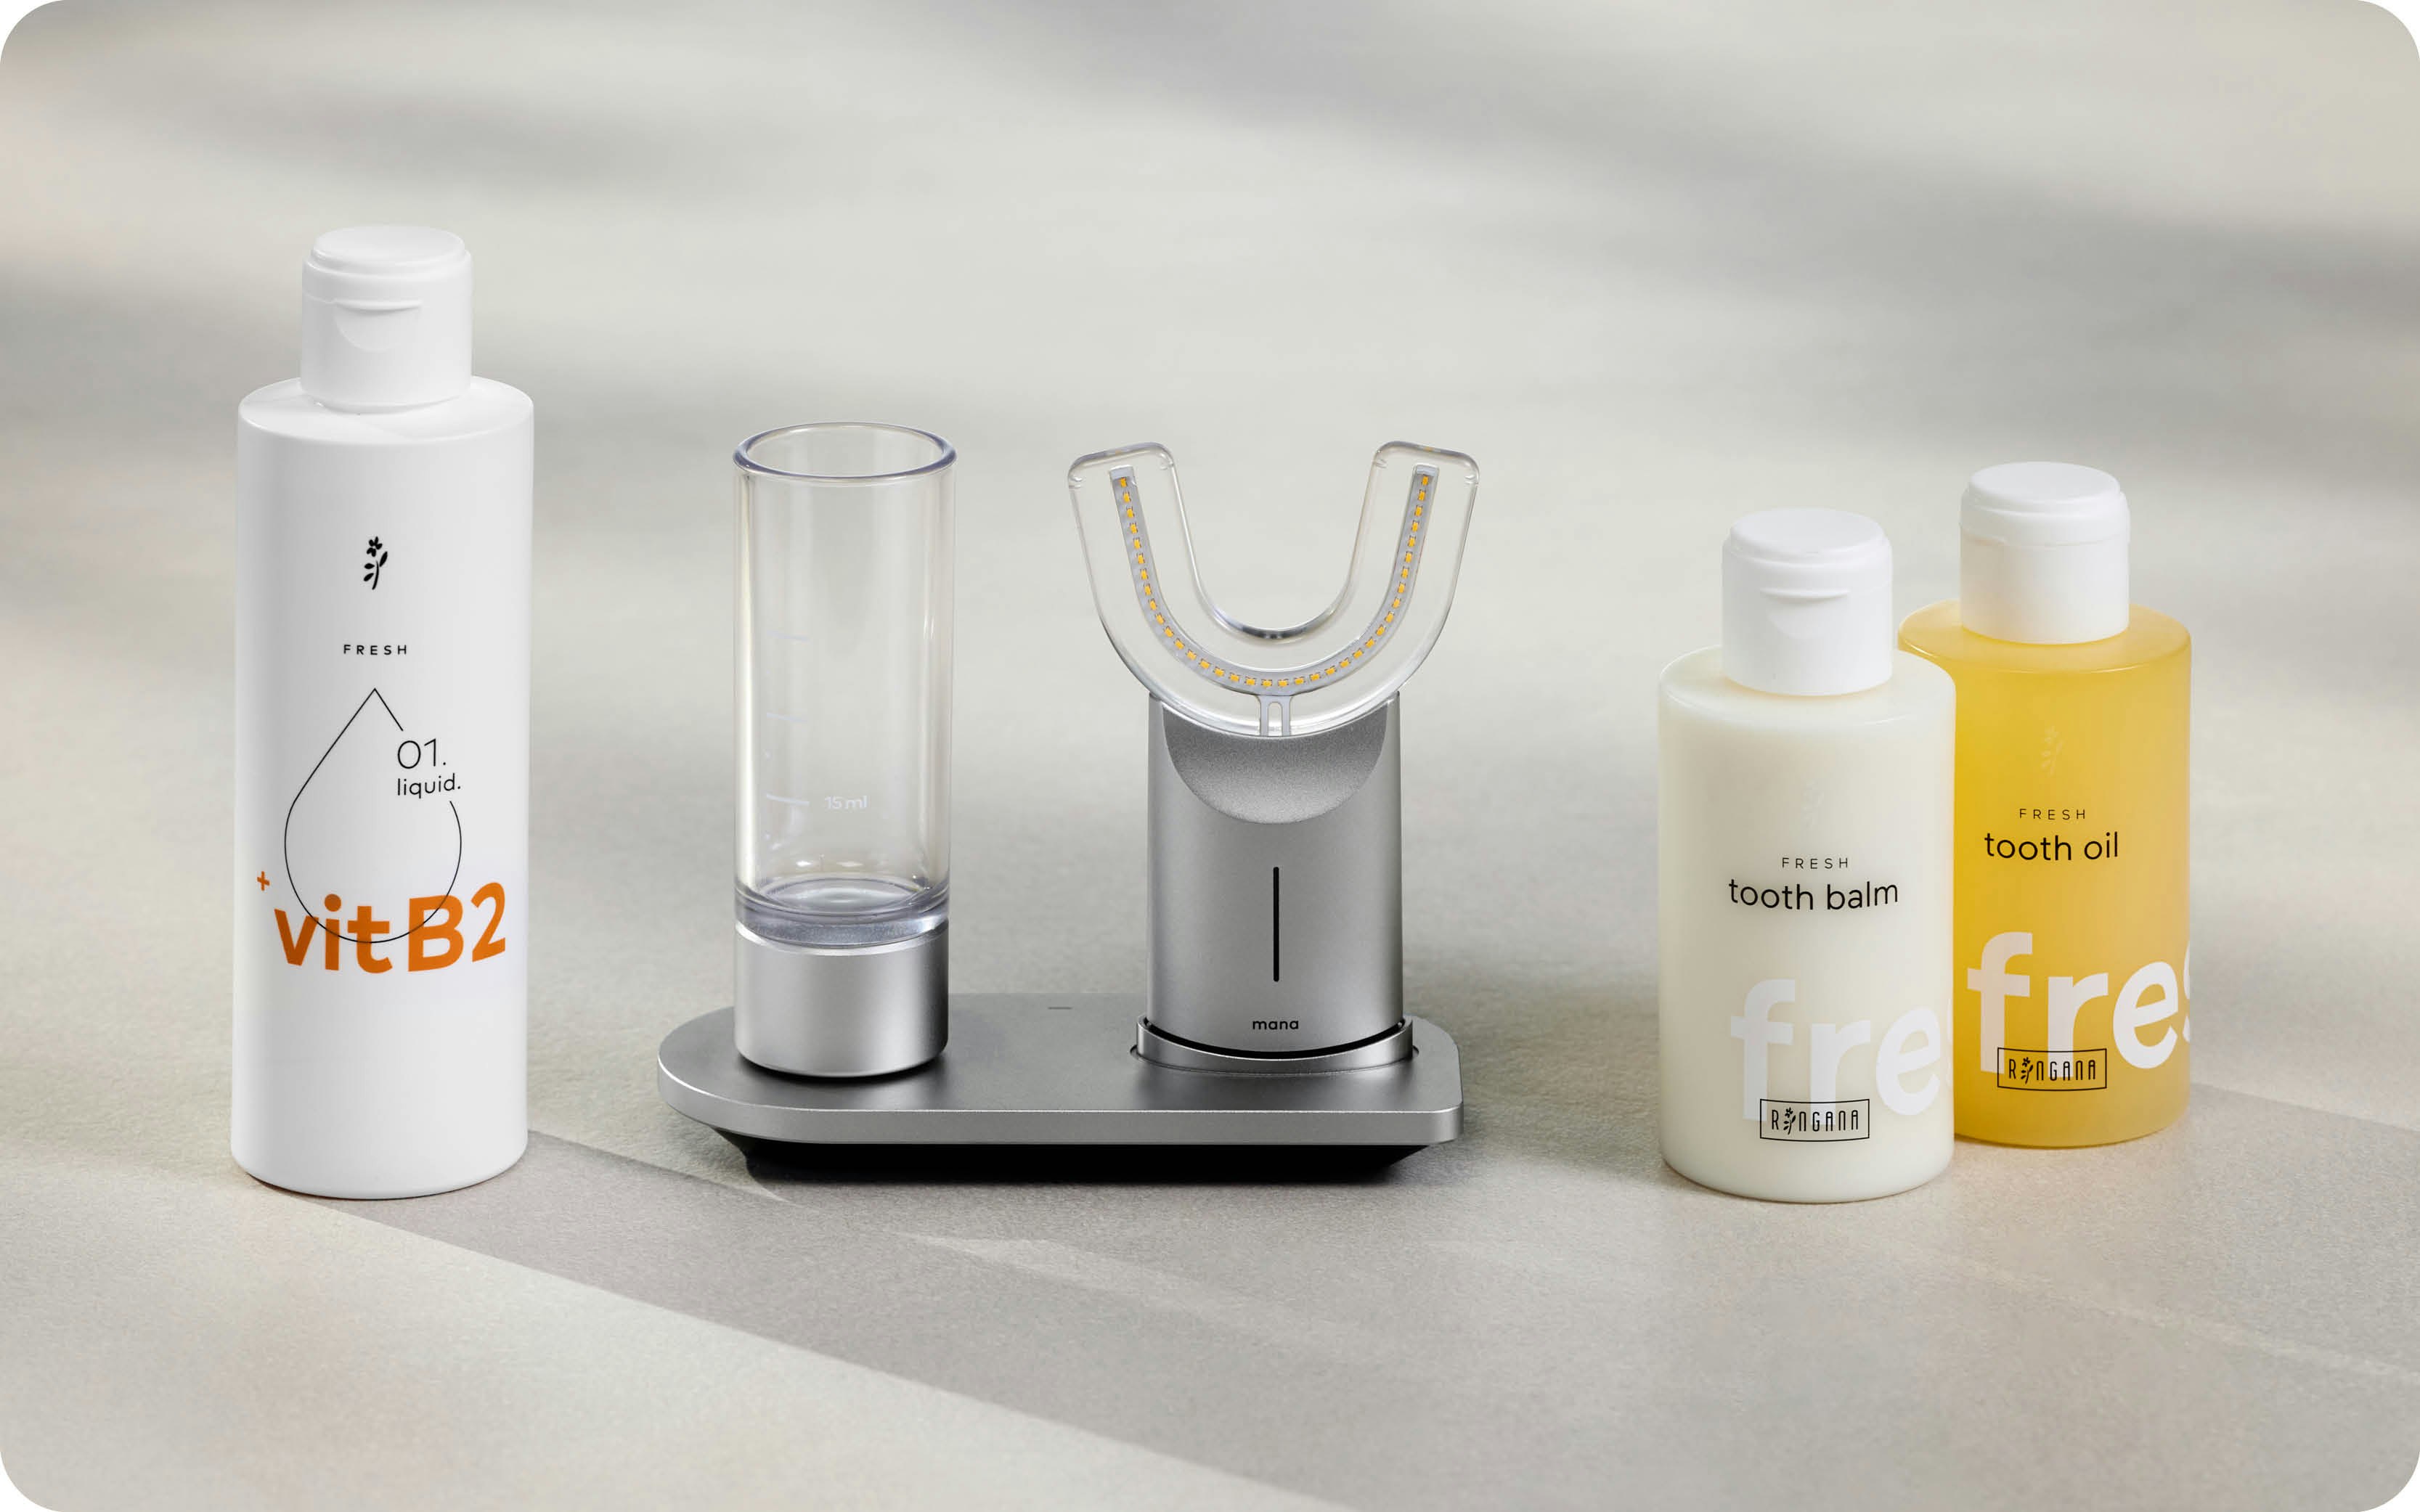 Imagefoto mit allen Produkte der RINGANA Zahnpflegeroutine für Erwachsene: manadental liquid, manadental device, FRESH tooth oil und FRESH tooth balm.